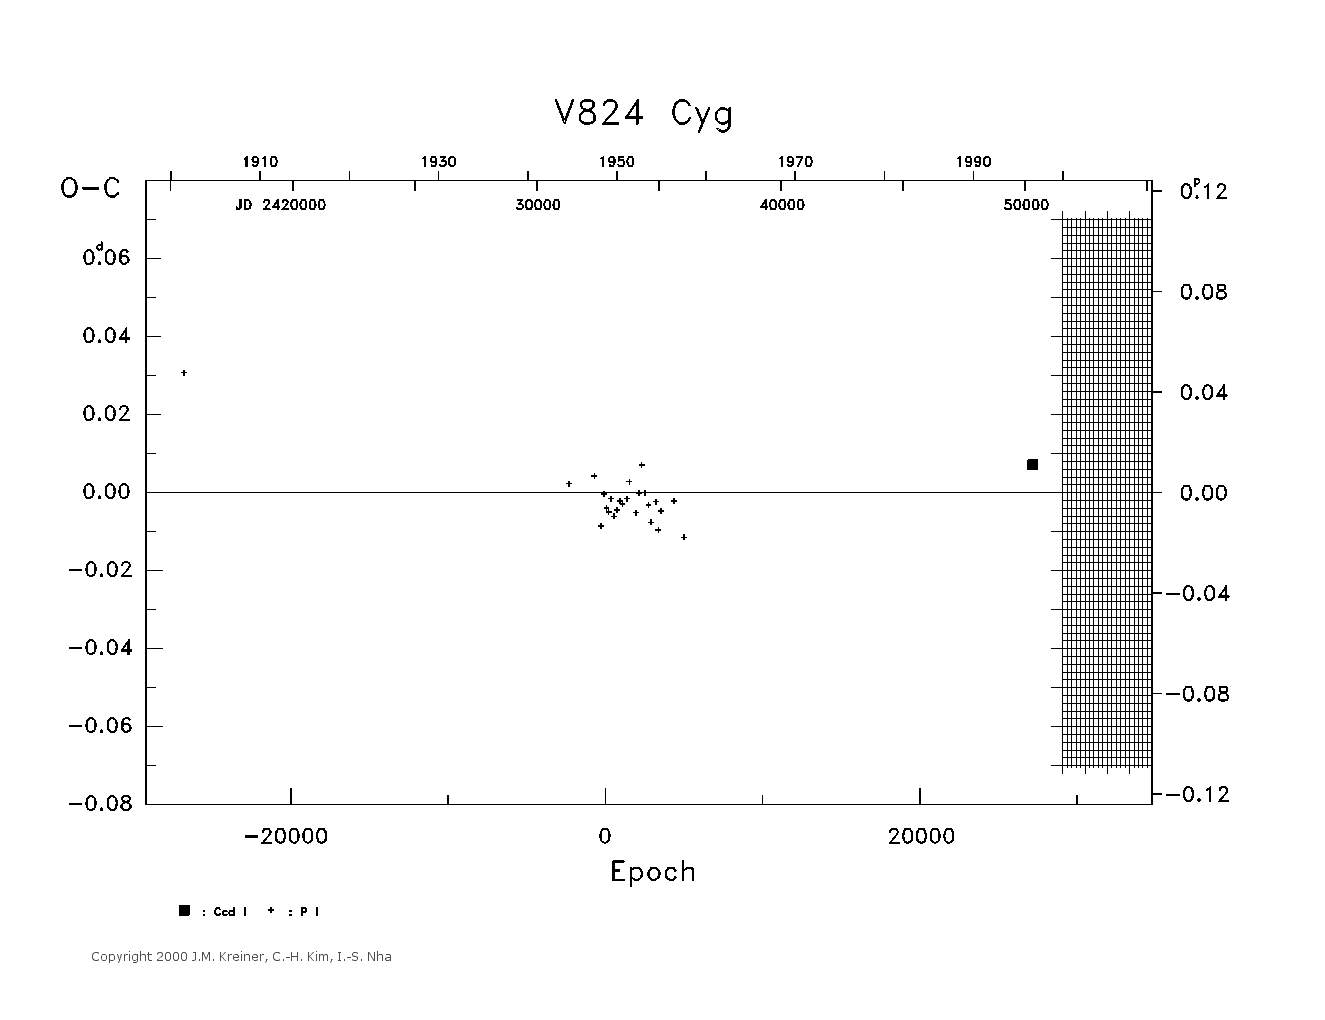 [IMAGE: large V824 CYG O-C diagram]